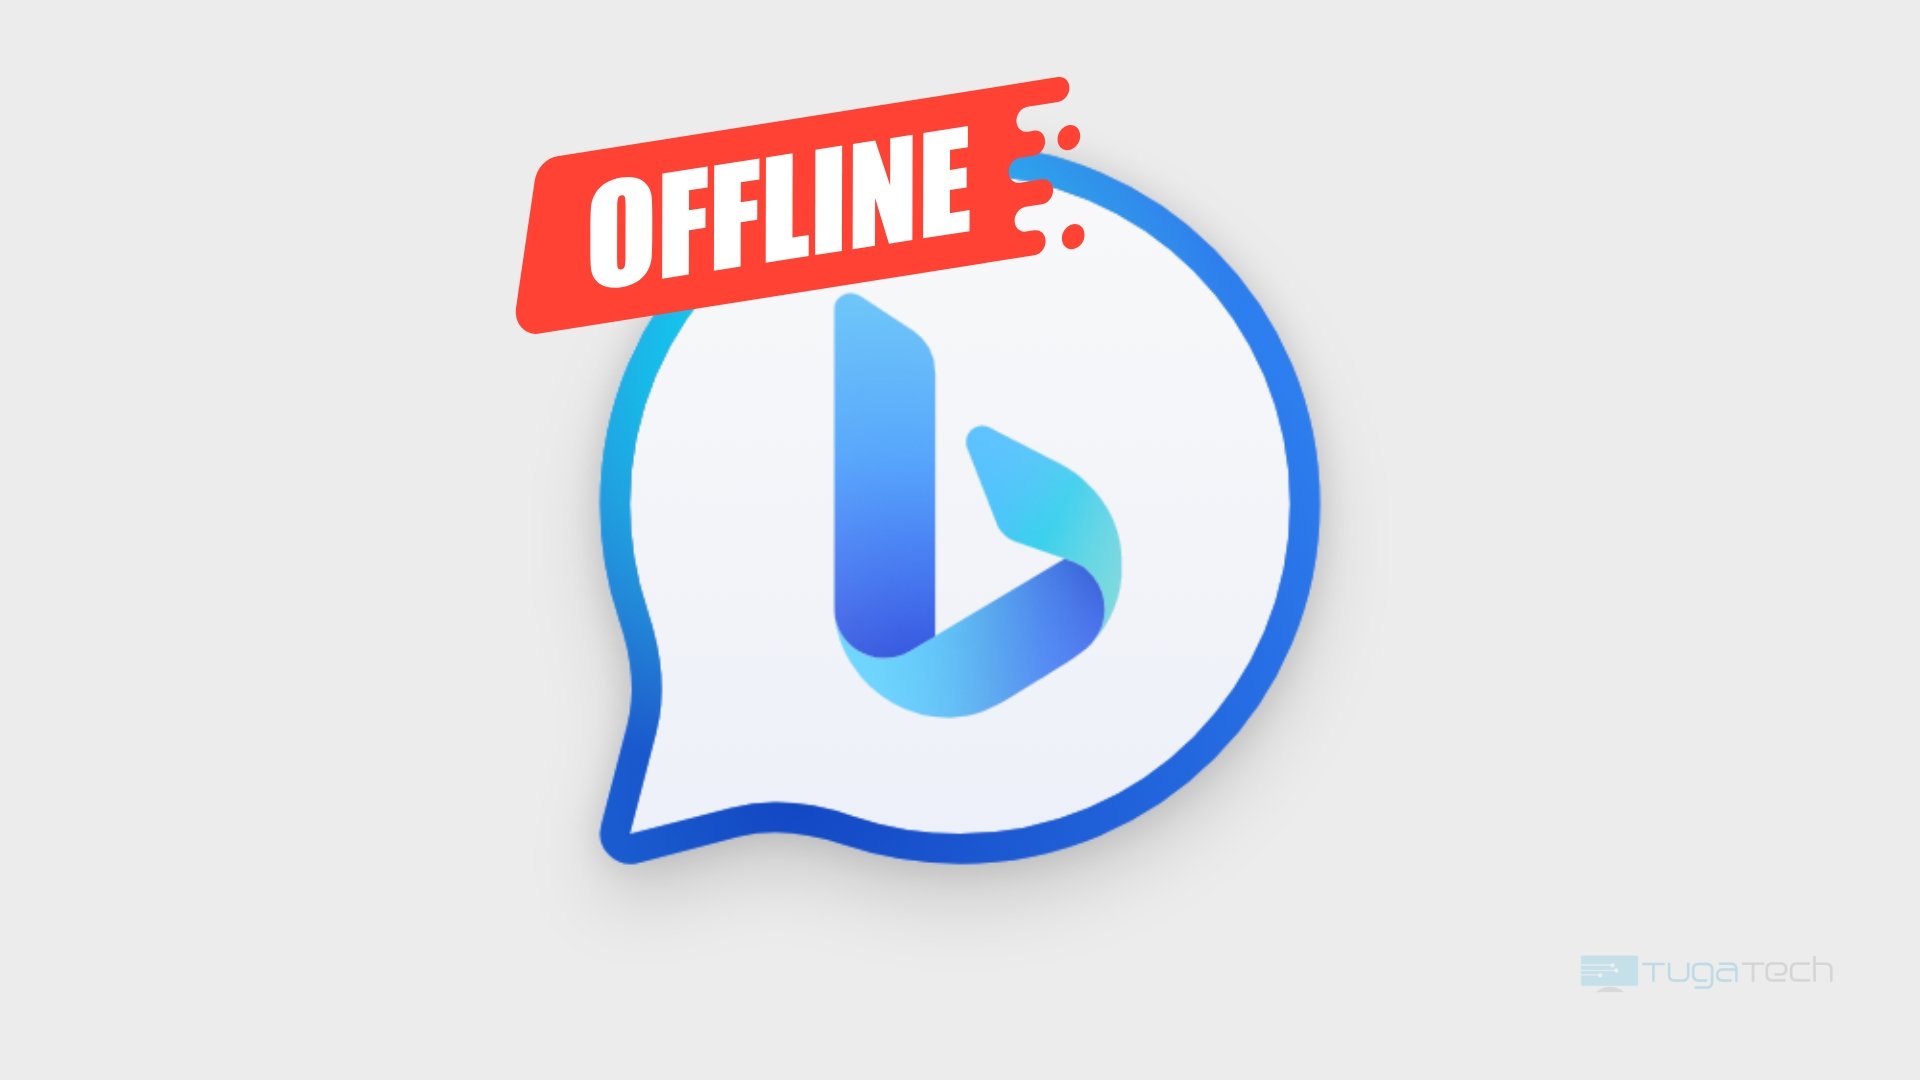 Logo do Bing Chat com icone a indicar "offline"